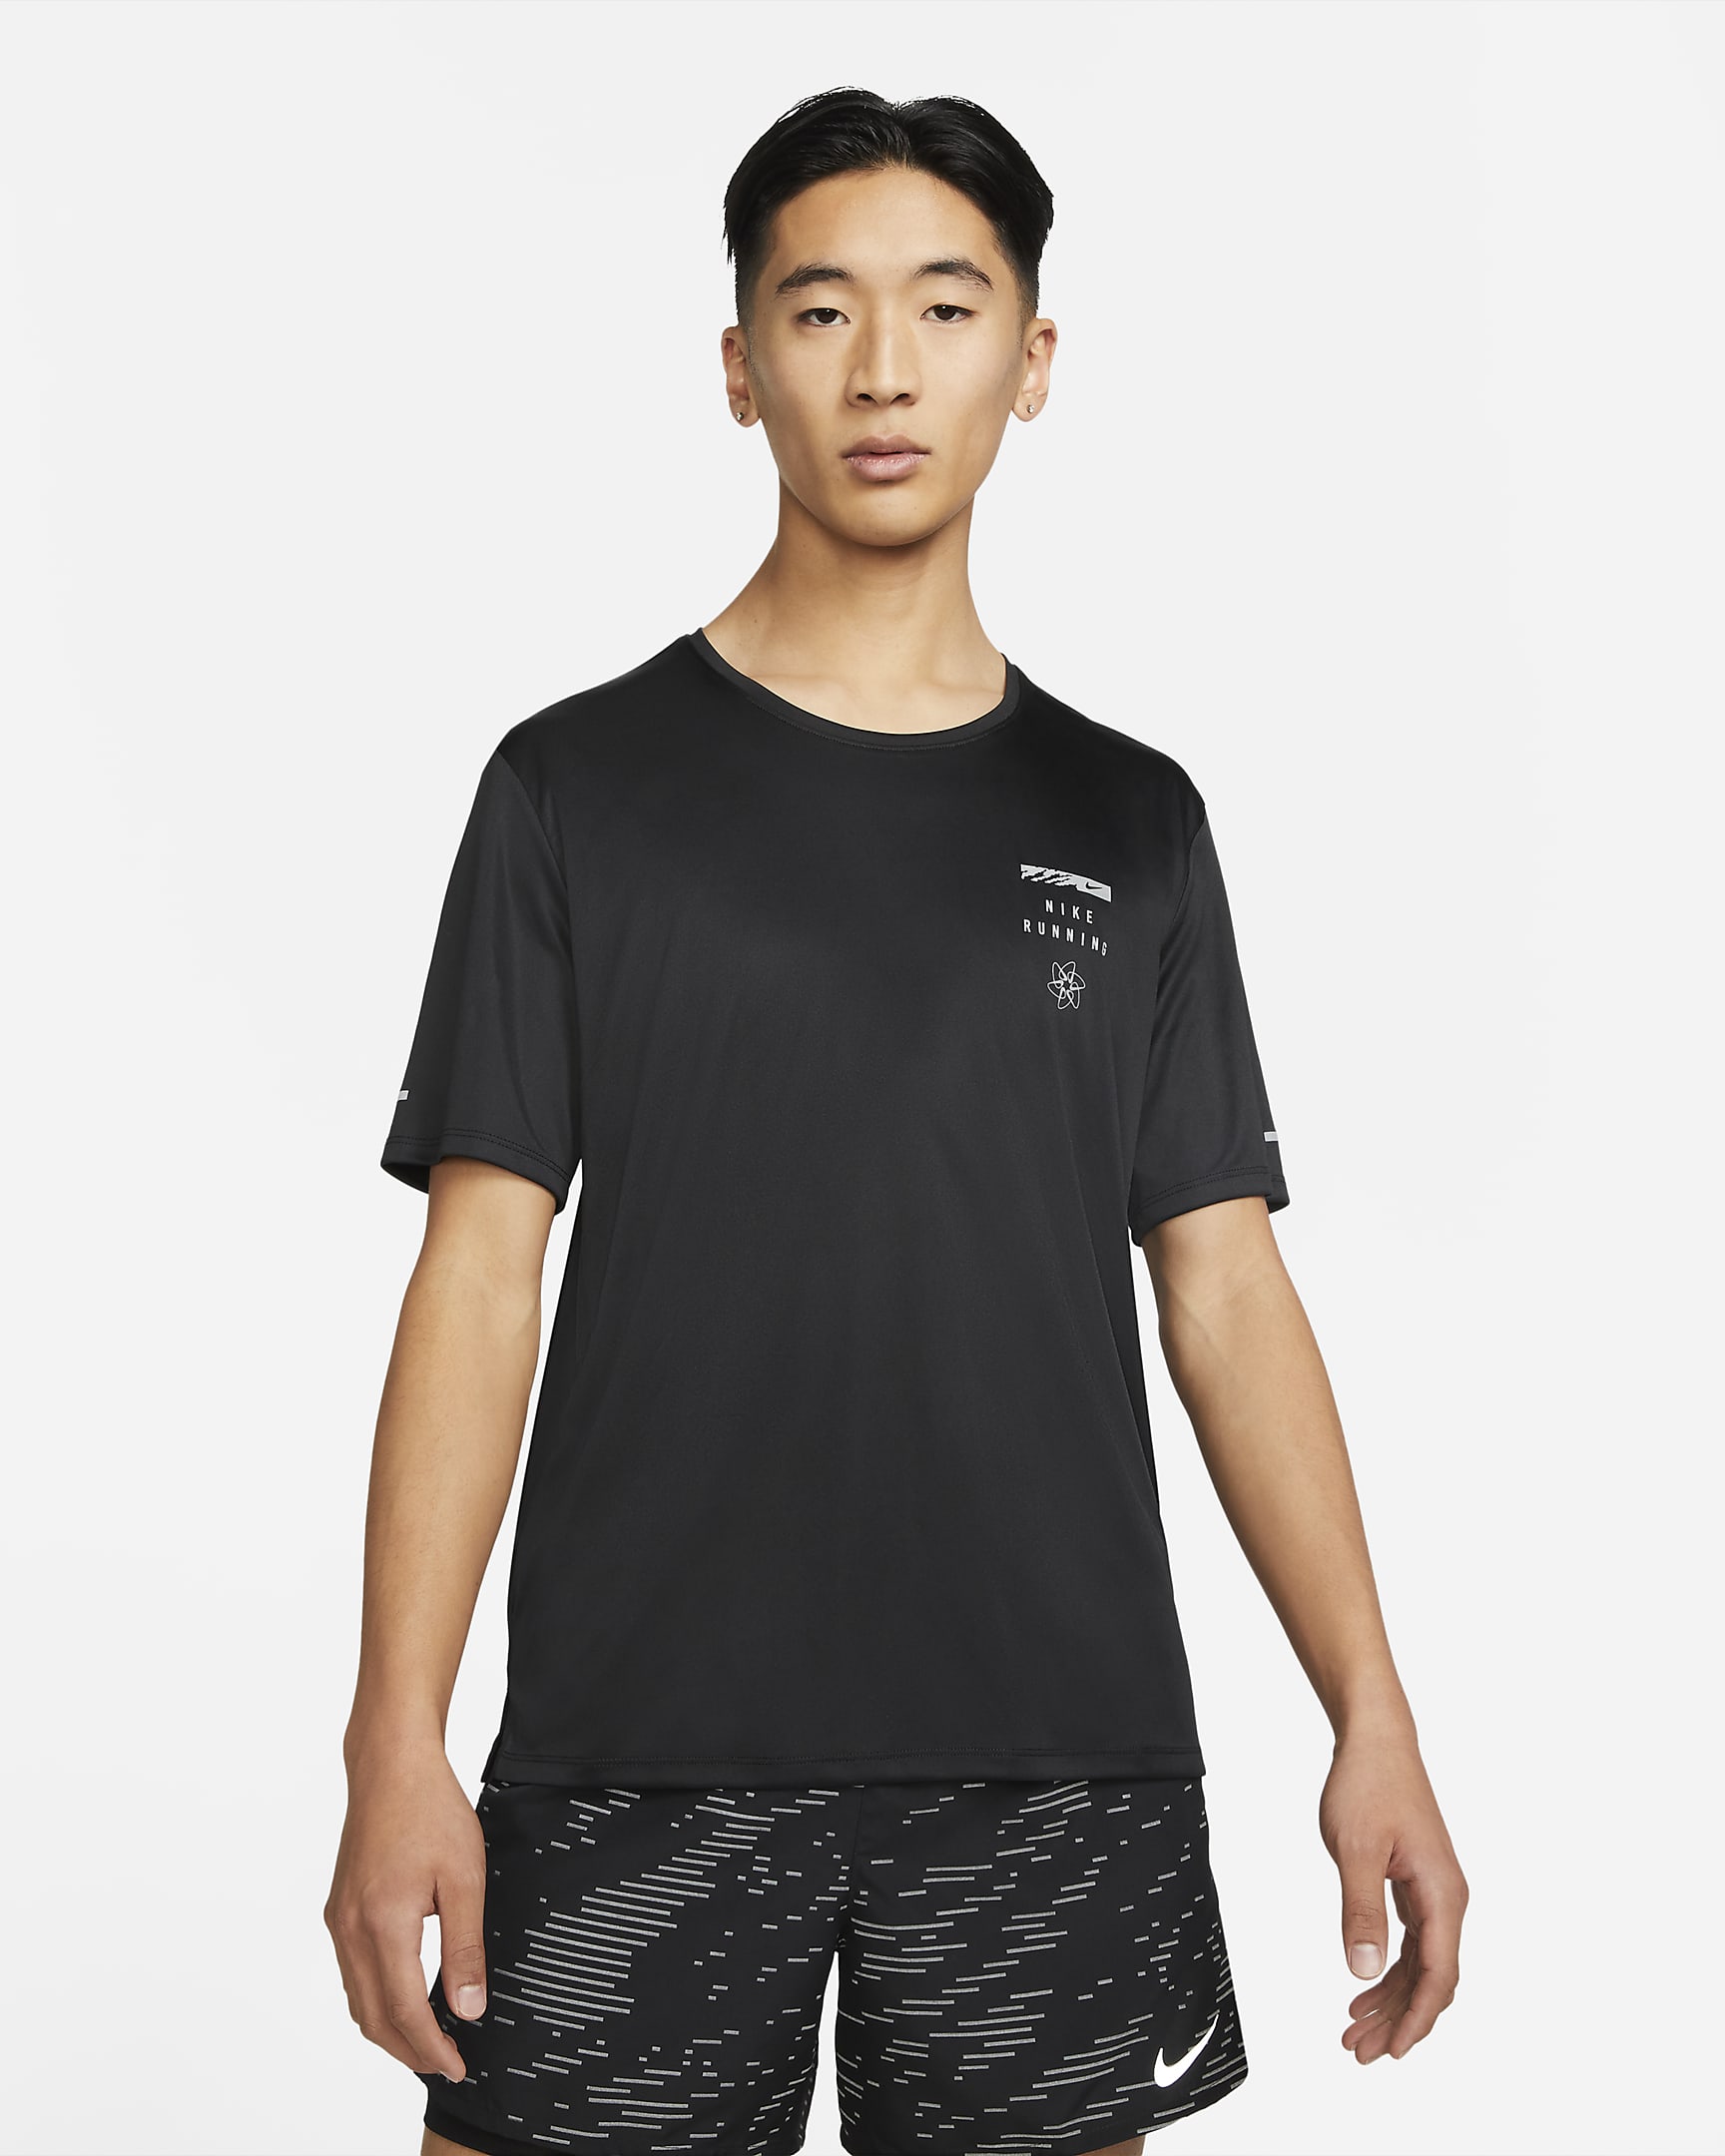 Nike Dri-FIT UV Run Division Miler Men's Graphic Short-Sleeve Top. Nike IN